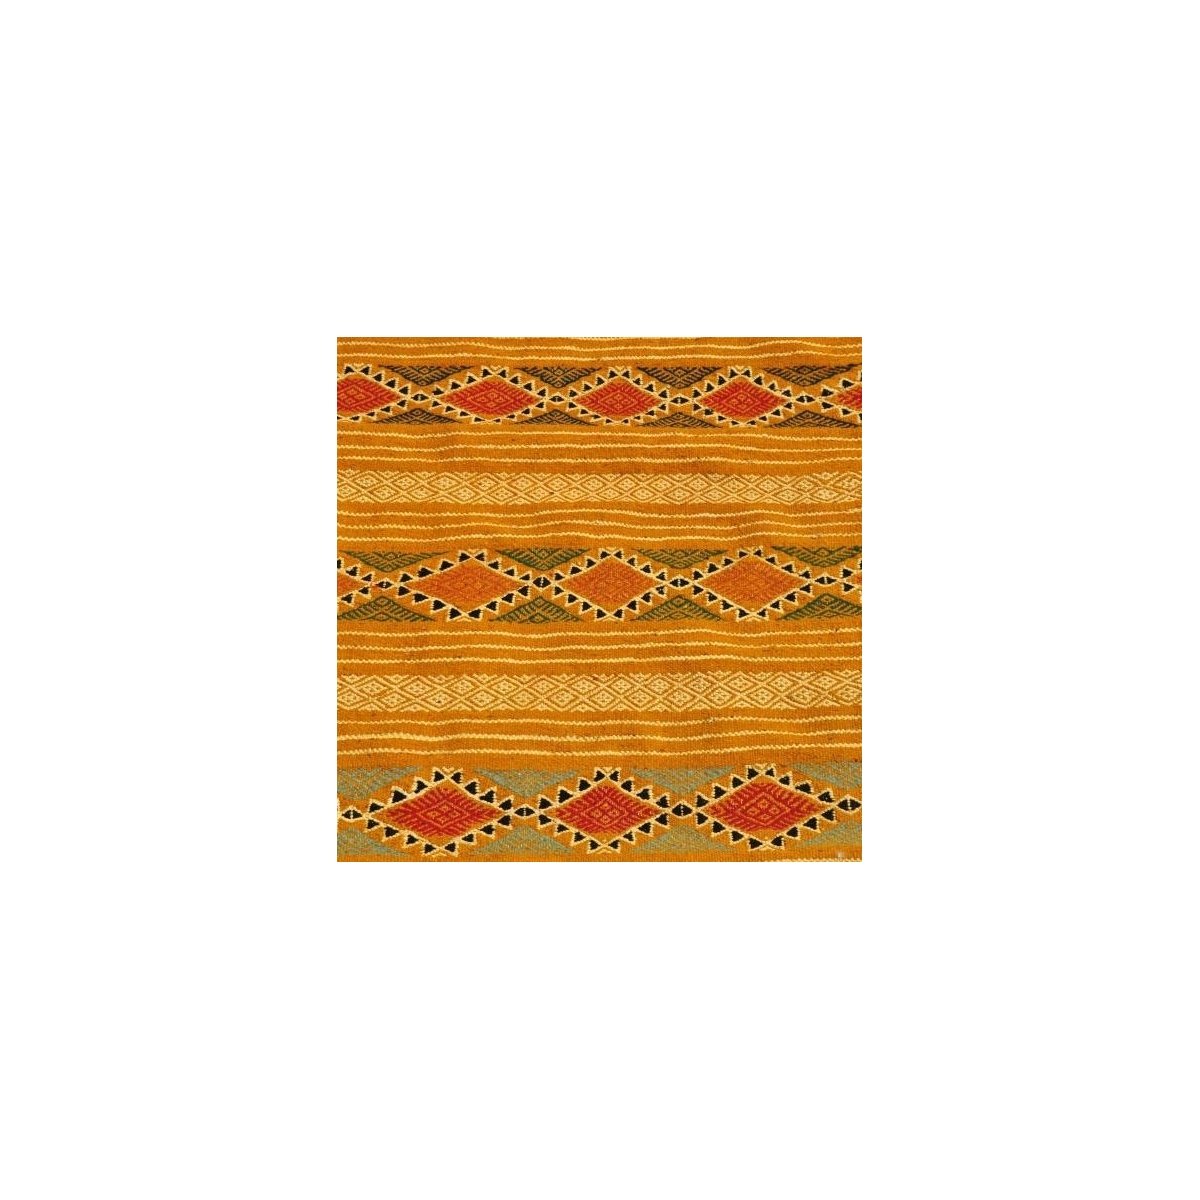 Tapis berbère Tapis Kilim Dalil 145x245 Orange/Ocre/Bleu (Tissé main, Laine) Tapis kilim tunisien style tapis marocain. Tapis re